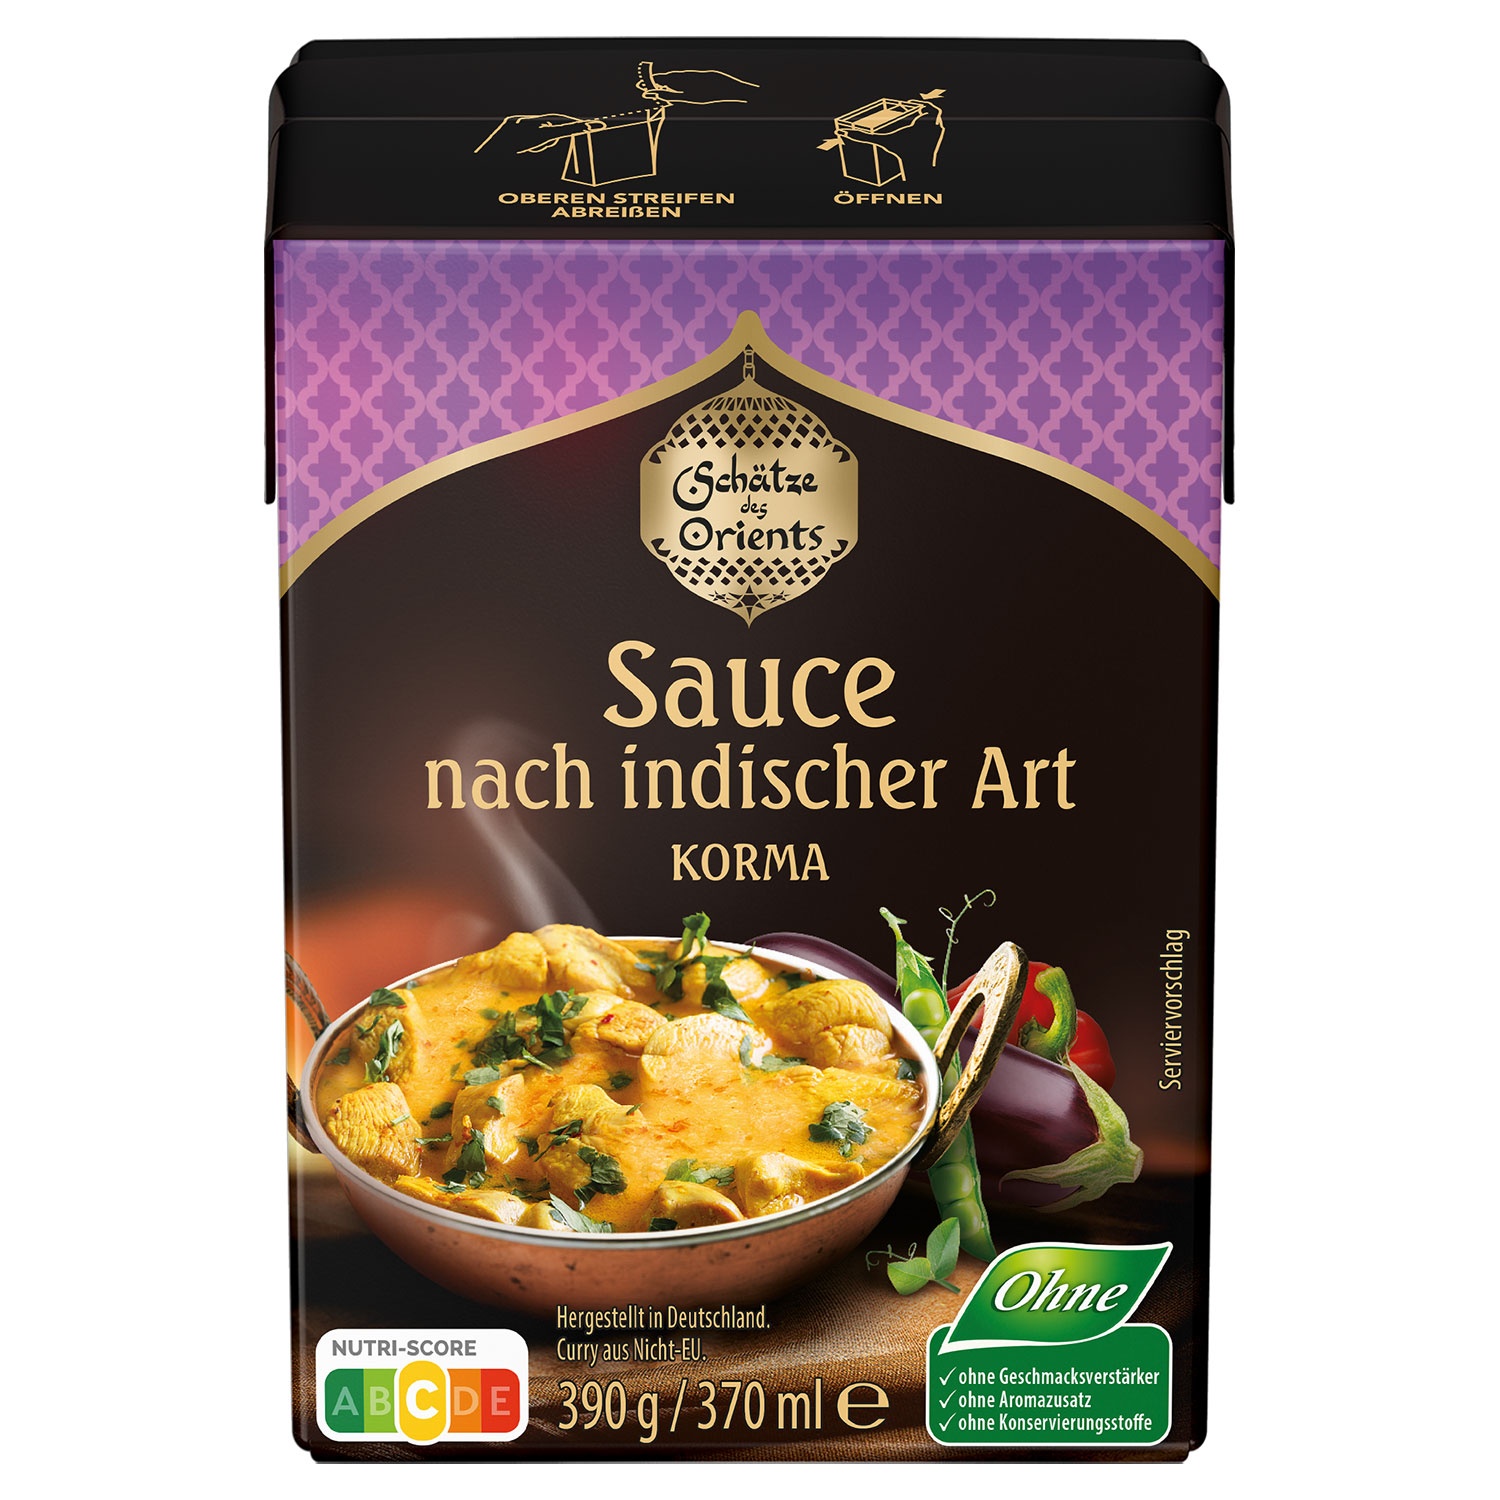 SCHÄTZE DES ORIENTS Sauce nach indischer Art 390 g